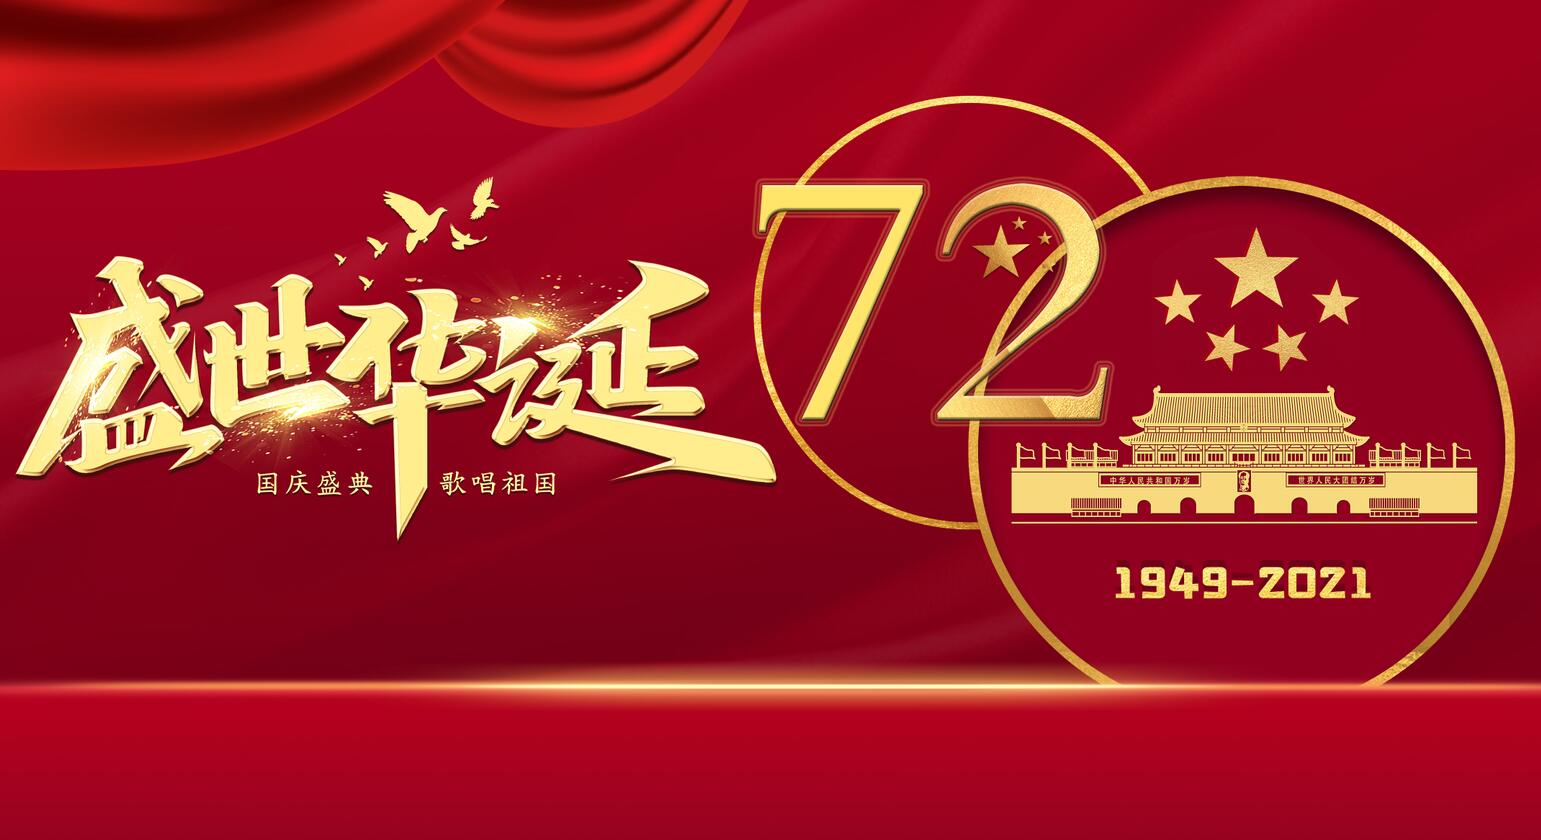 庆祝中华人民共和国成立72周年 国务院举行国庆招待会